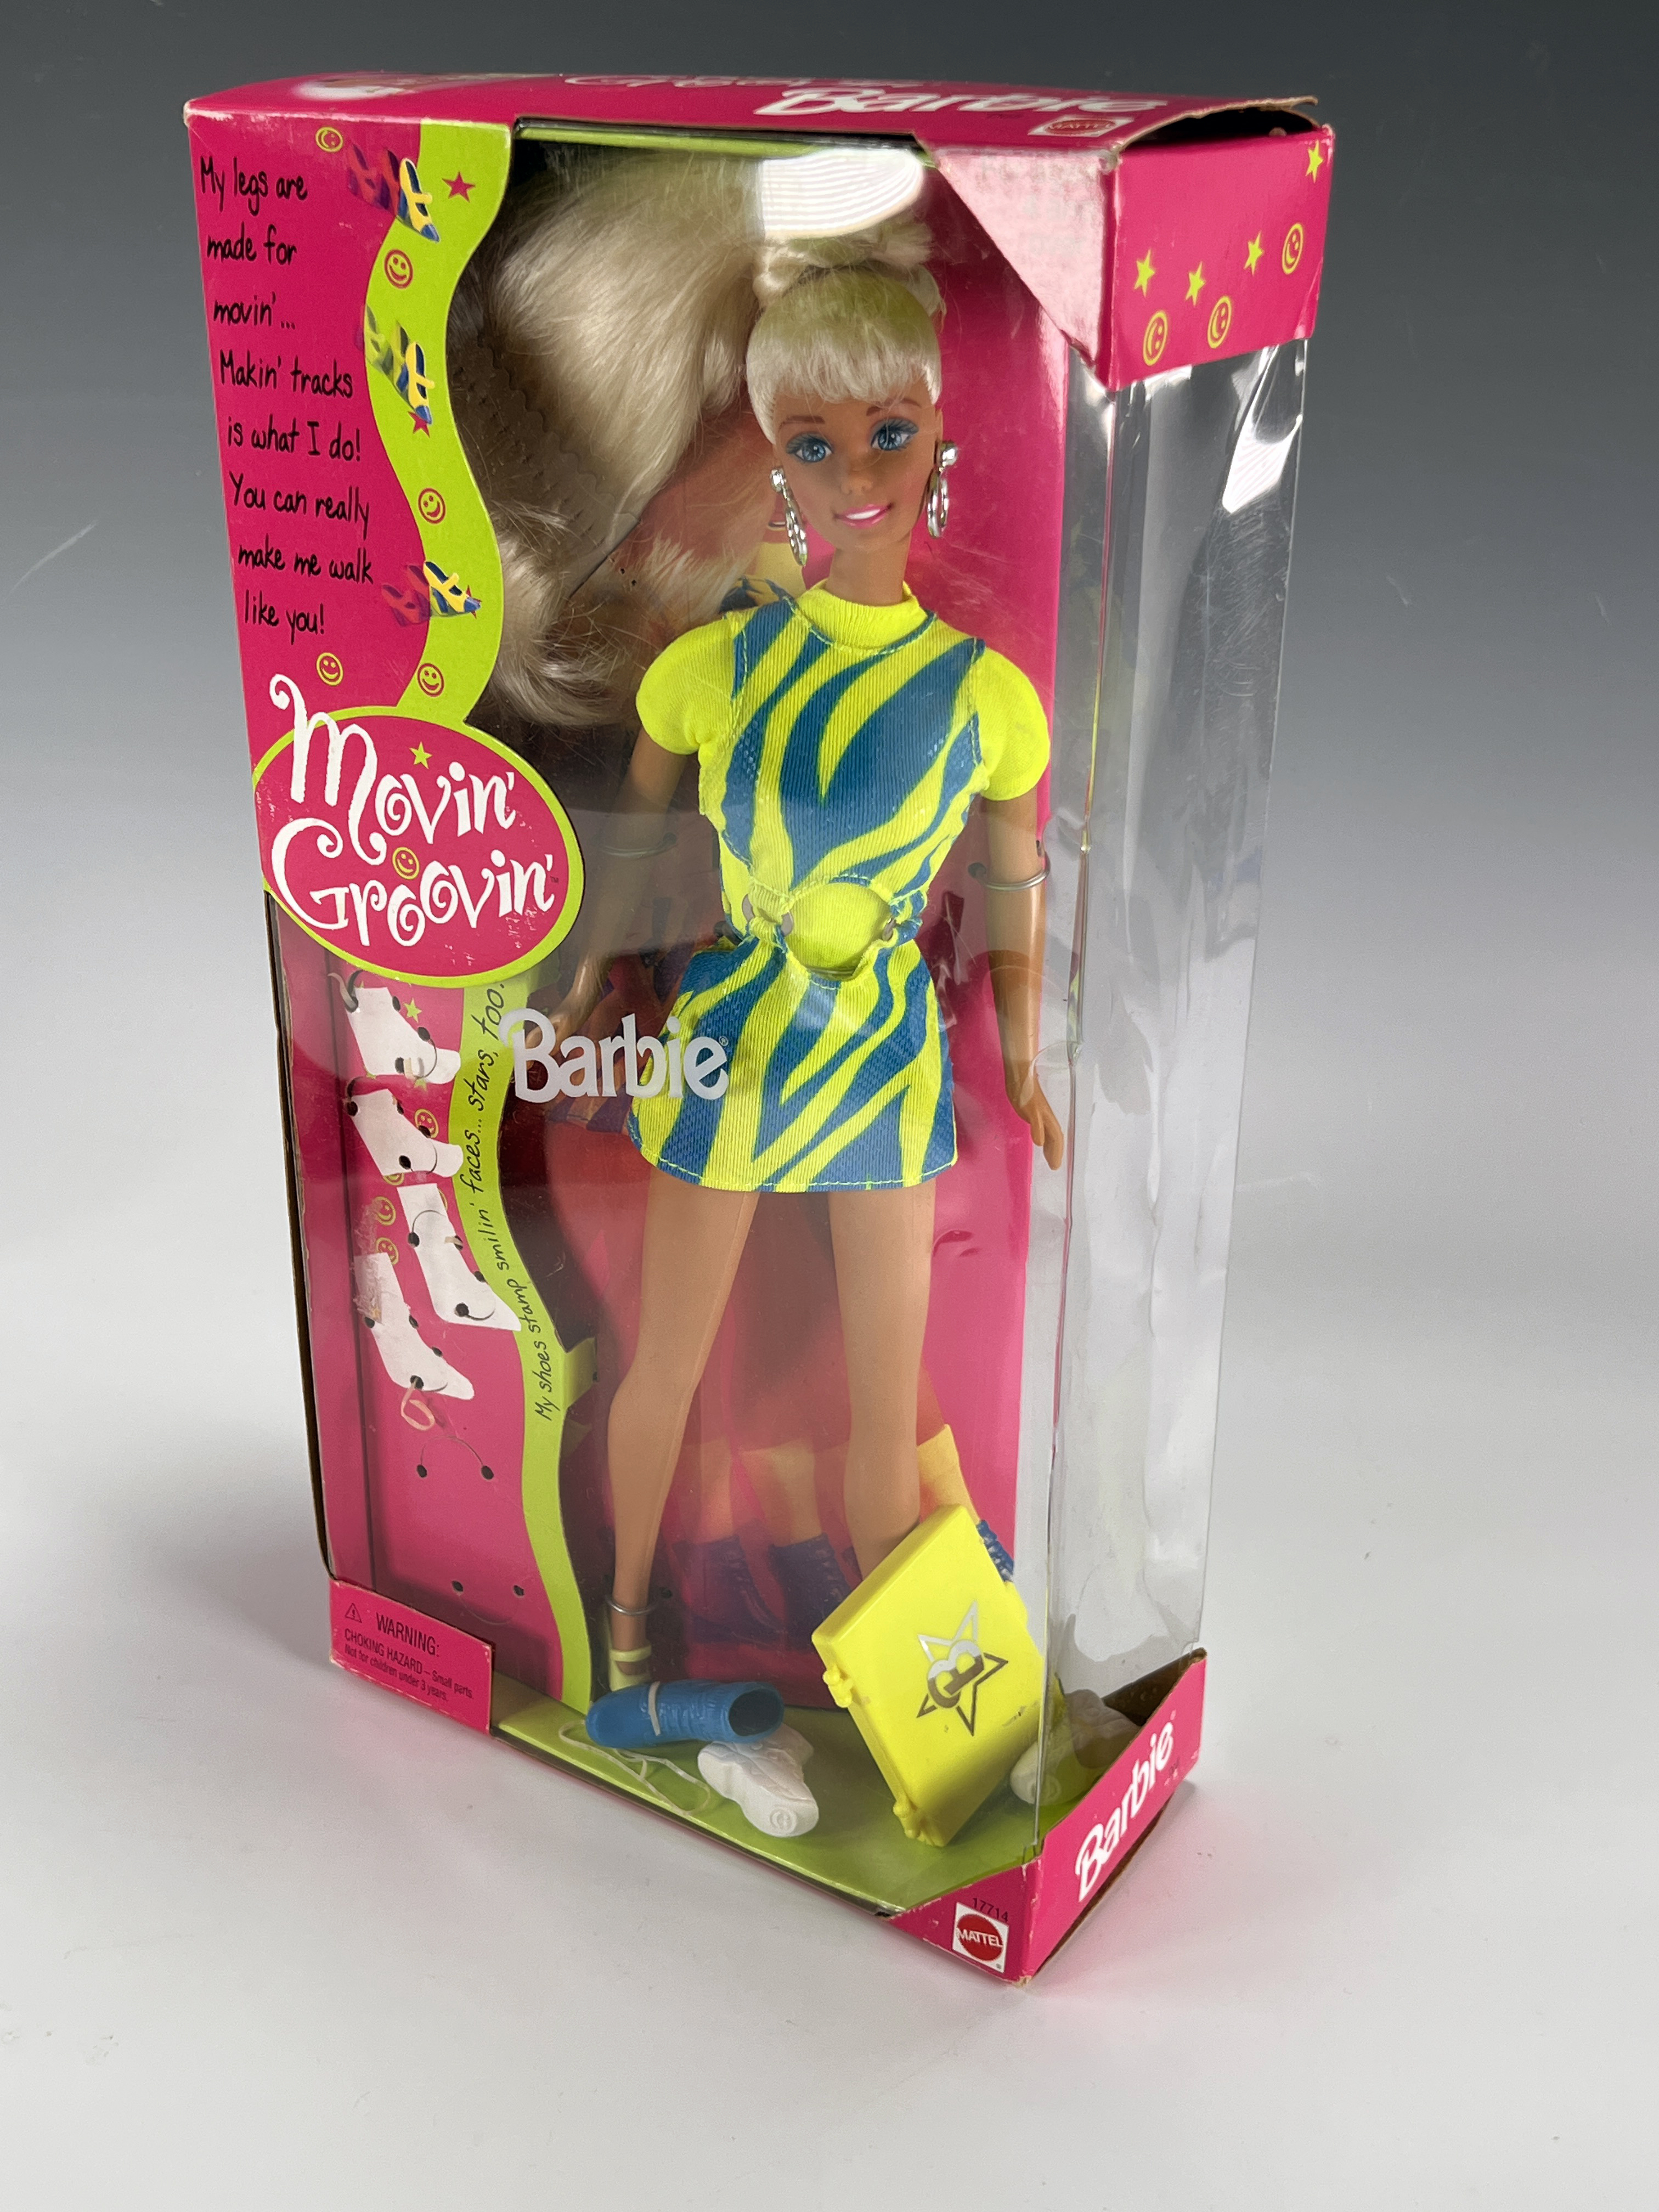 Movin Groovin Barbie In Box & Ken Doll image 3